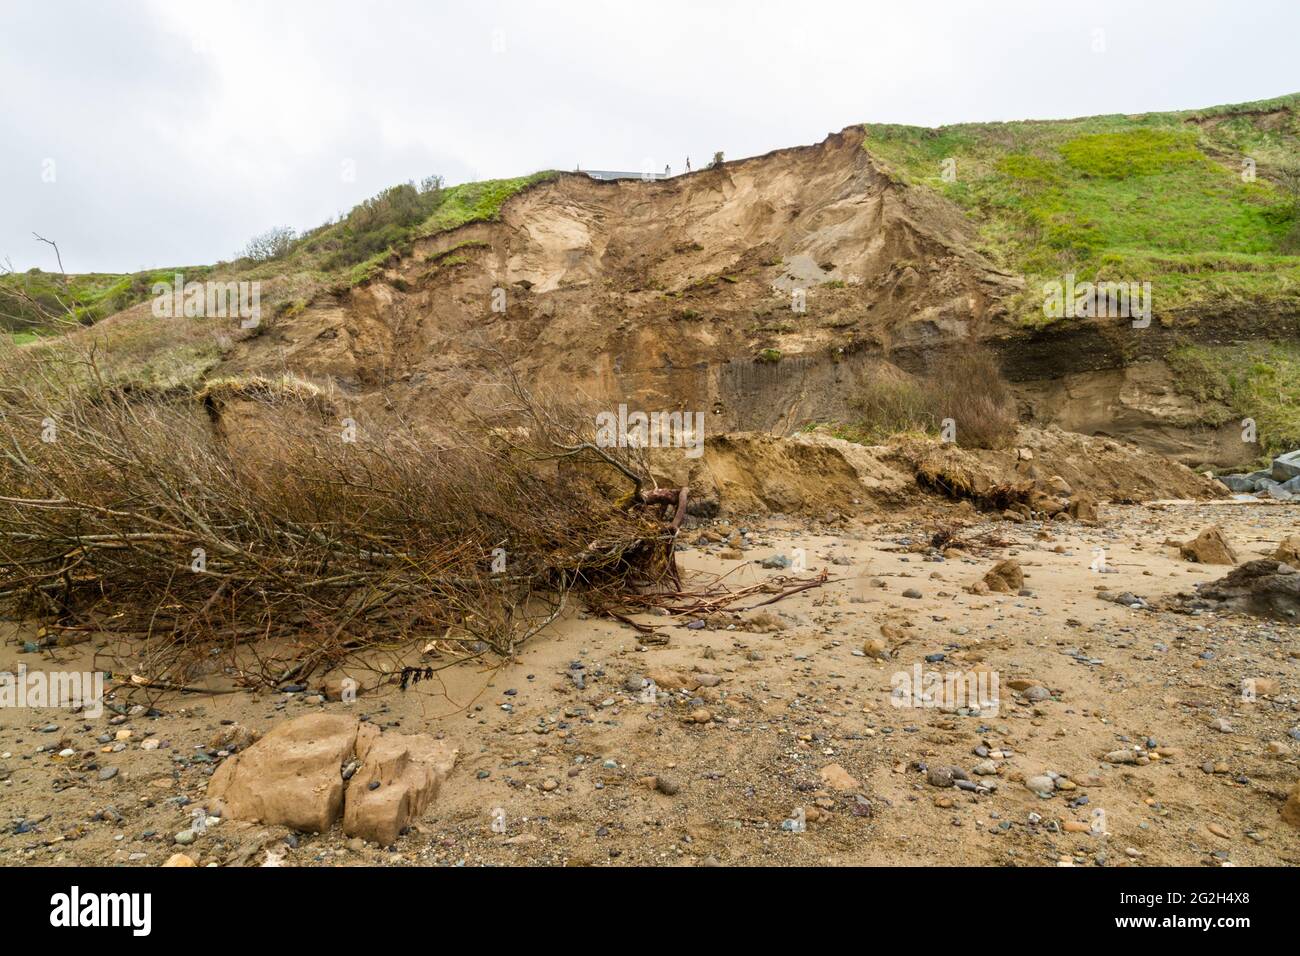 Vue depuis la plage des falaises au-dessus du glissement de terrain à Nefyn, Llyn Peninsula, pays de Galles, Royaume-Uni. Cela s'est produit en avril 2021, cette image prise en mai 2021, atterrit Banque D'Images